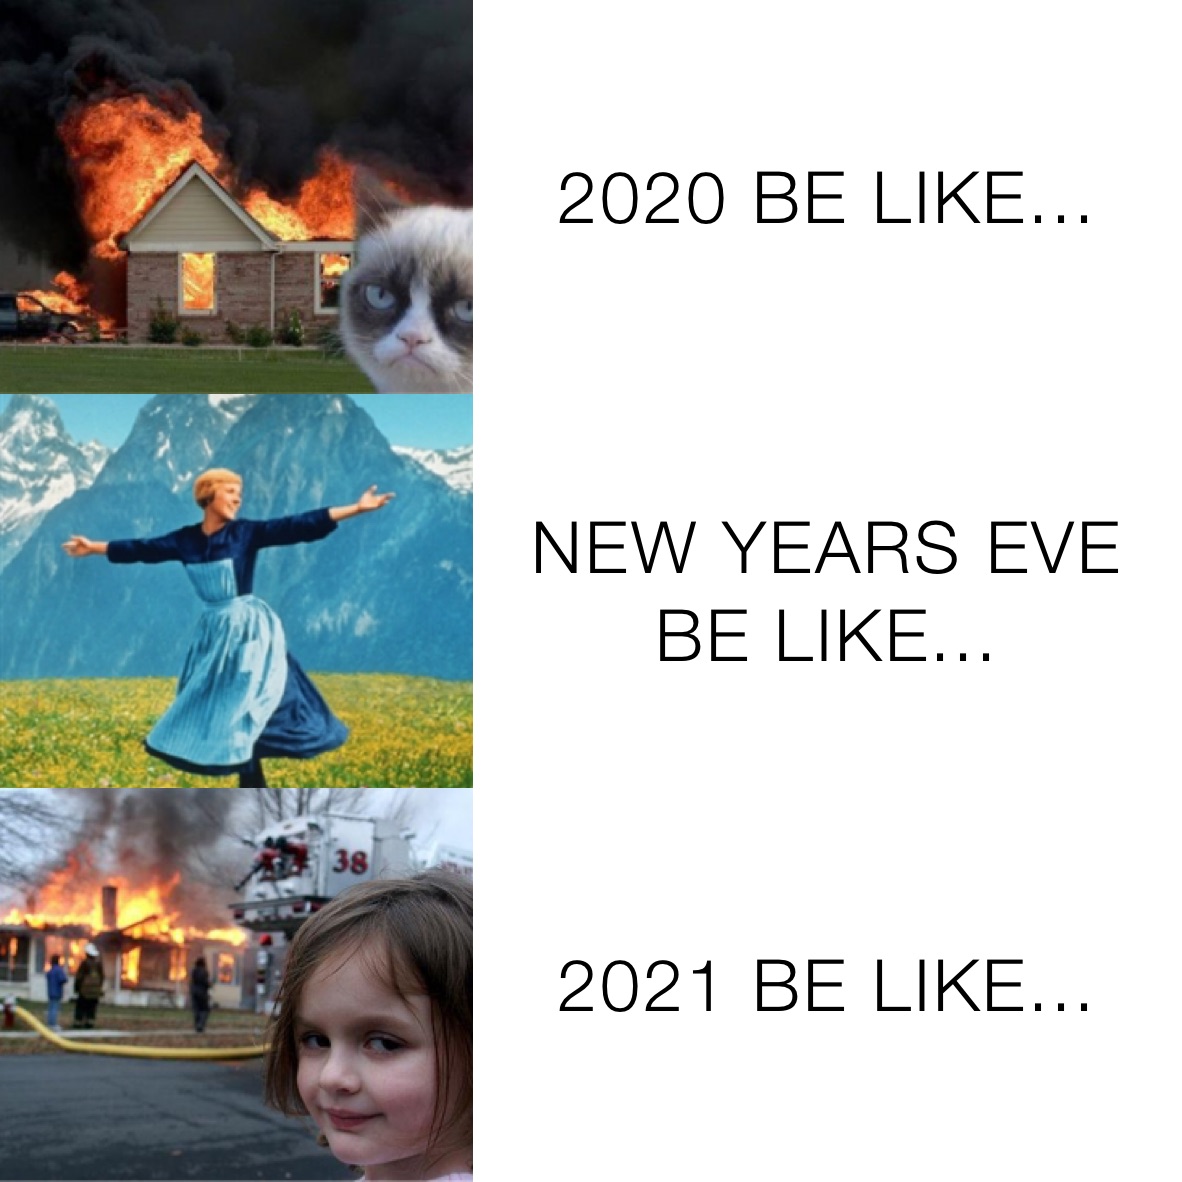 2020 BE LIKE... NEW YEARS EVE BE LIKE... 2021 BE LIKE...